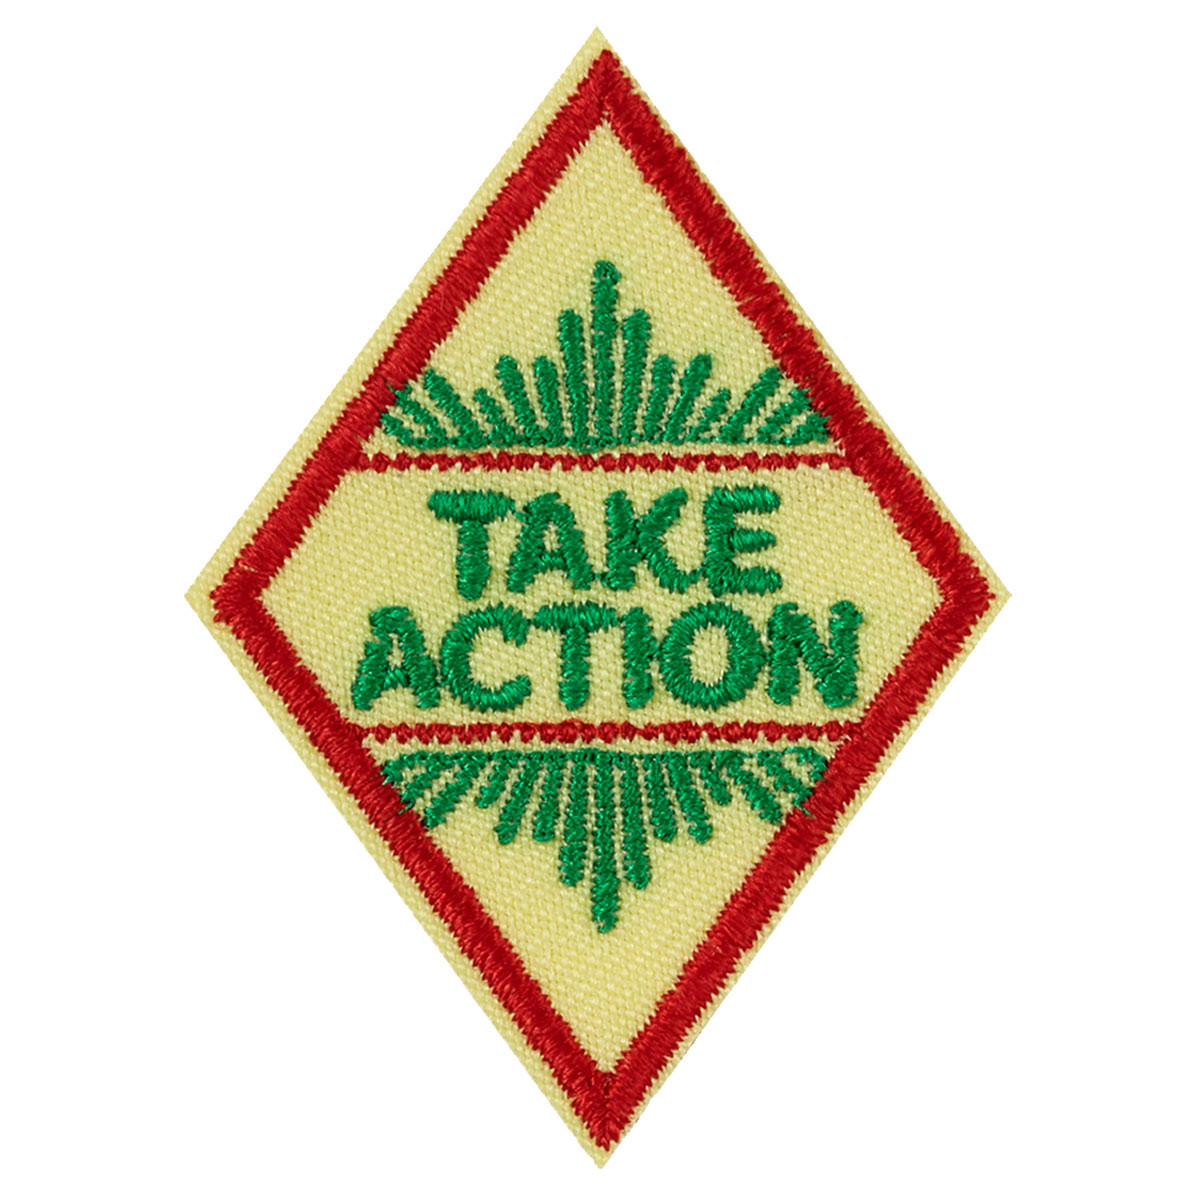 Take Action Award Badge